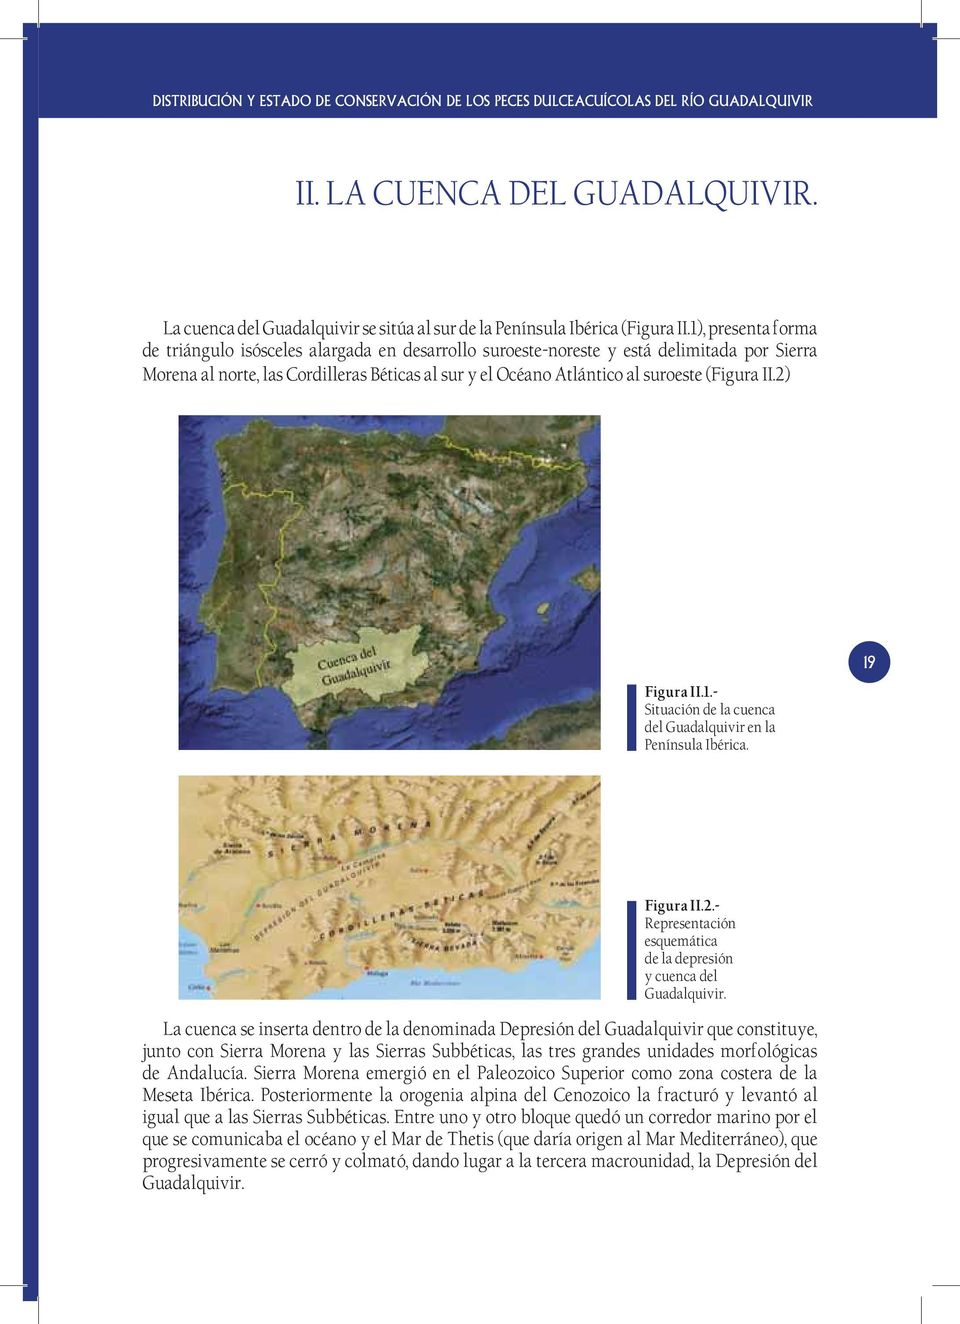 (Figura II.2) 19 Figura II.1.- Situación de la cuenca del Guadalquivir en la Península Ibérica. Figura II.2.- Representación esquemática de la depresión y cuenca del Guadalquivir.